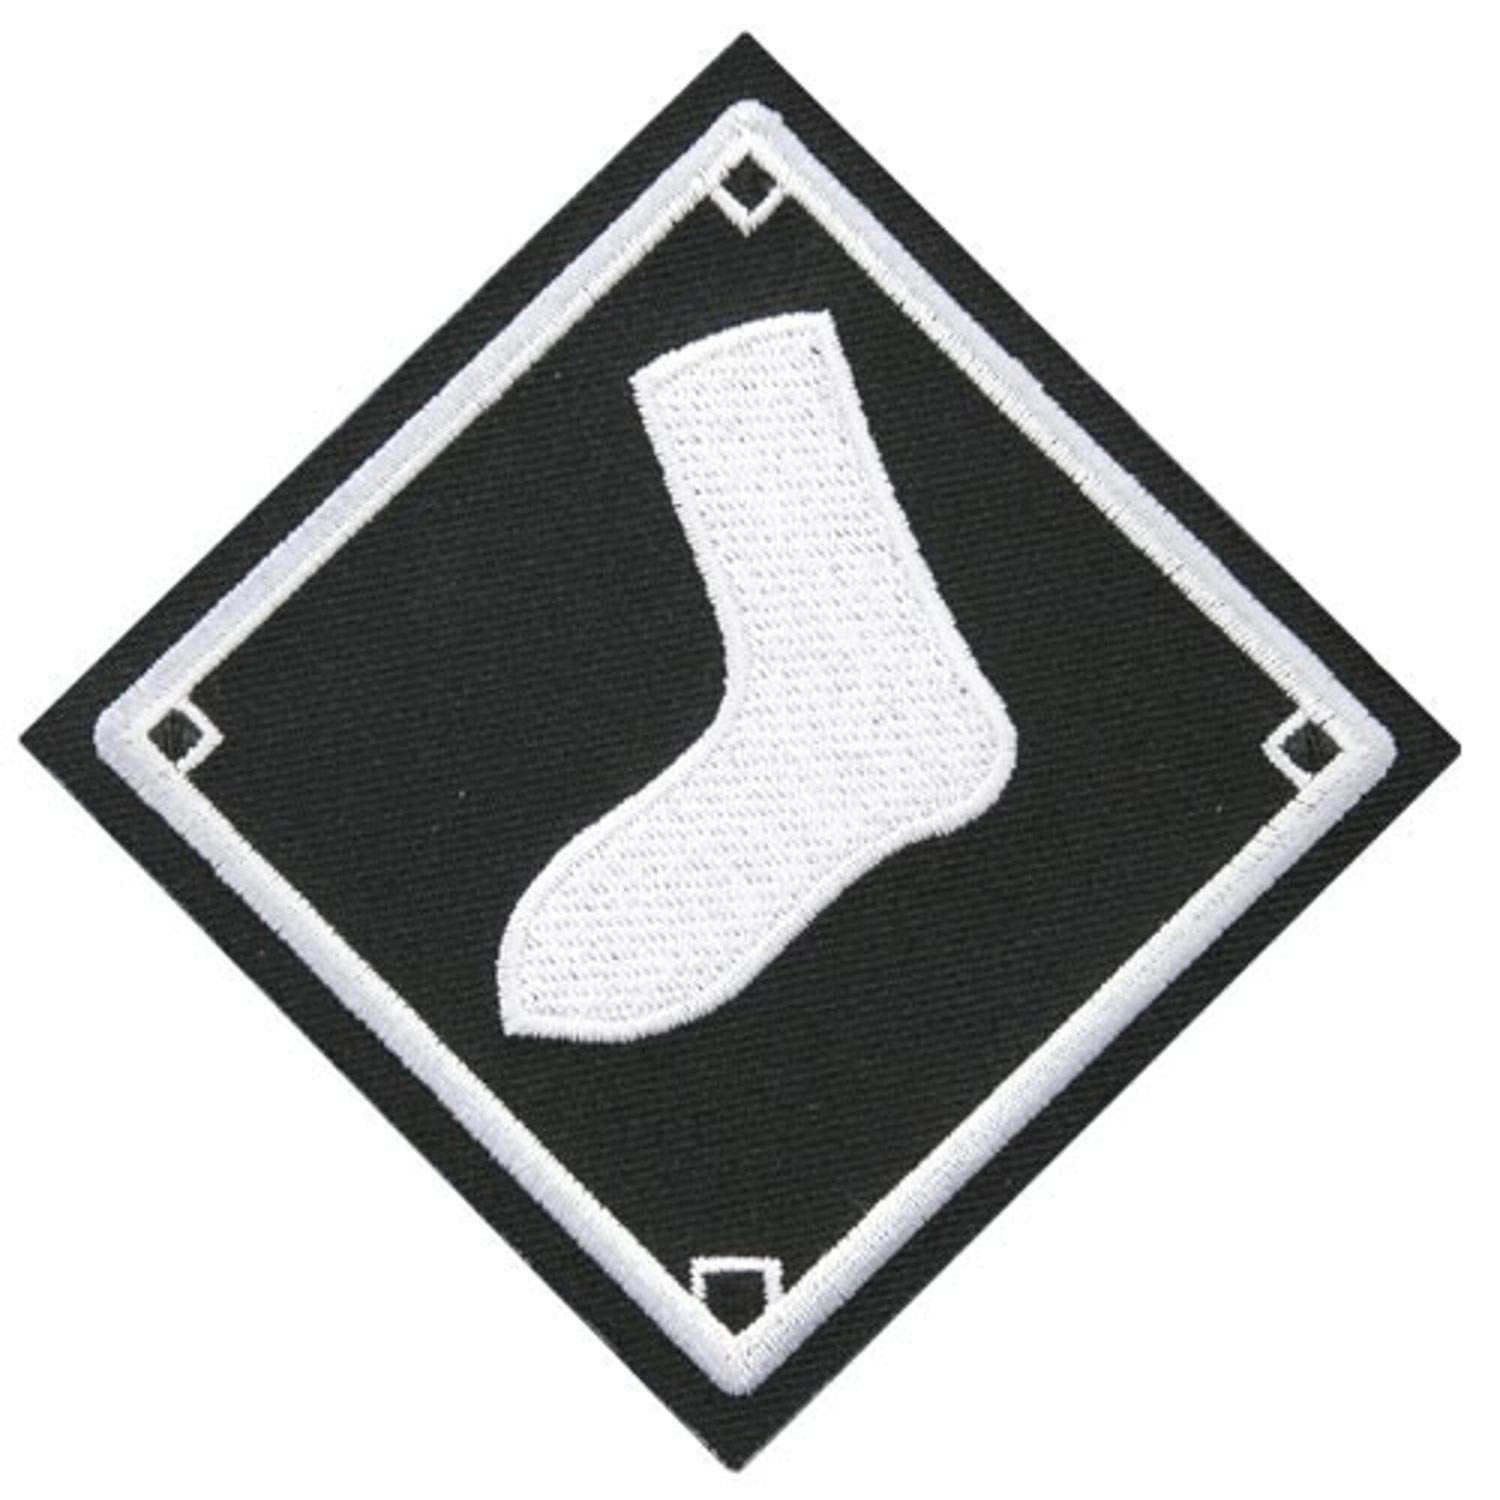 chicago white sox sock logo